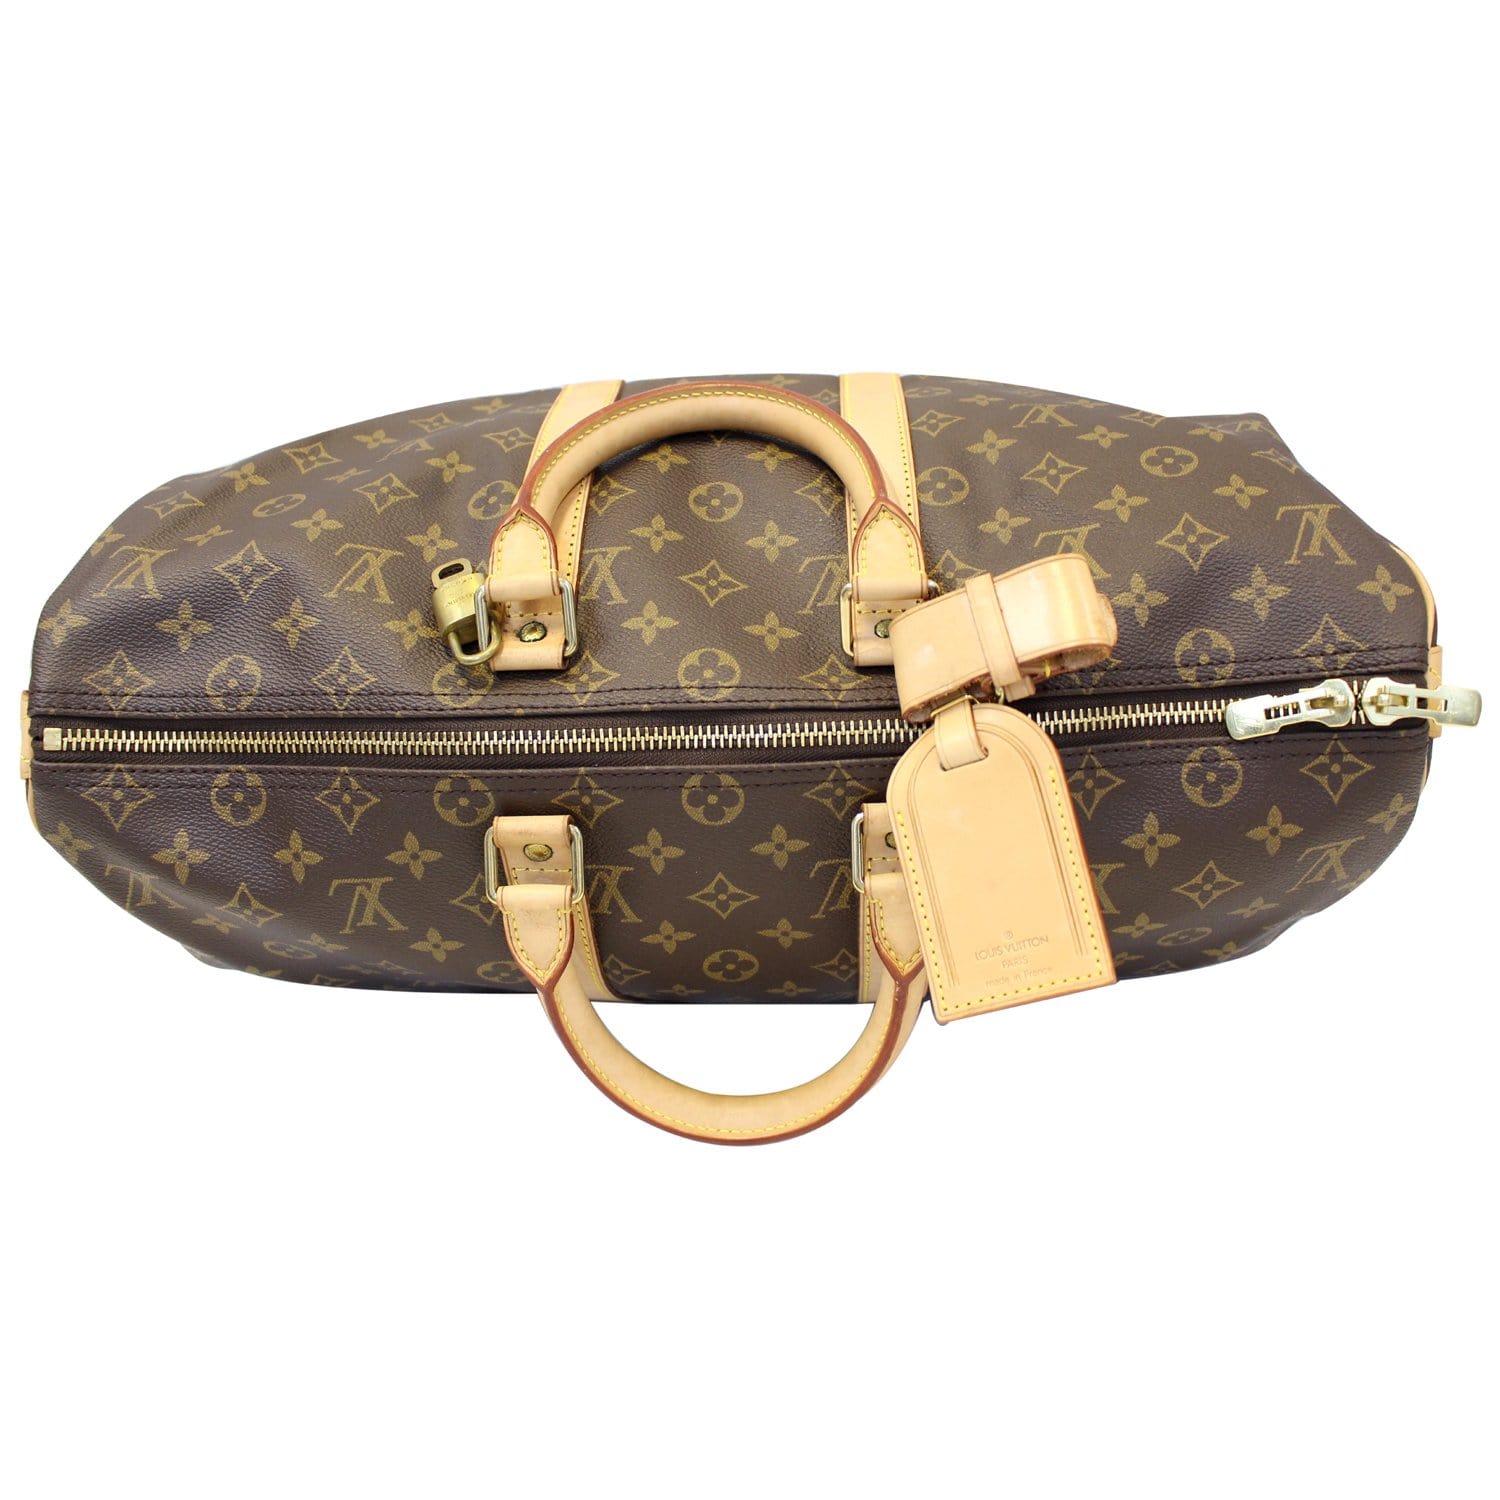 Bolsa de viaje Louis Vuitton Keepall 45 cm en lona Monogram marrón